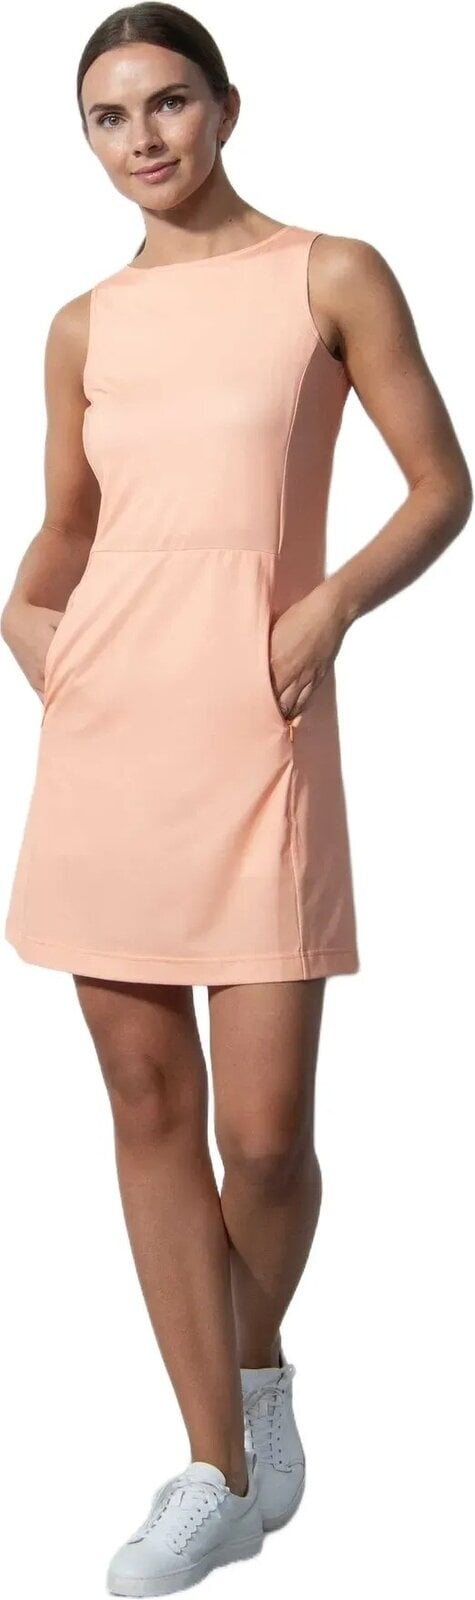 Skirt / Dress Daily Sports Savona Sleeveless Dress Kumquat S